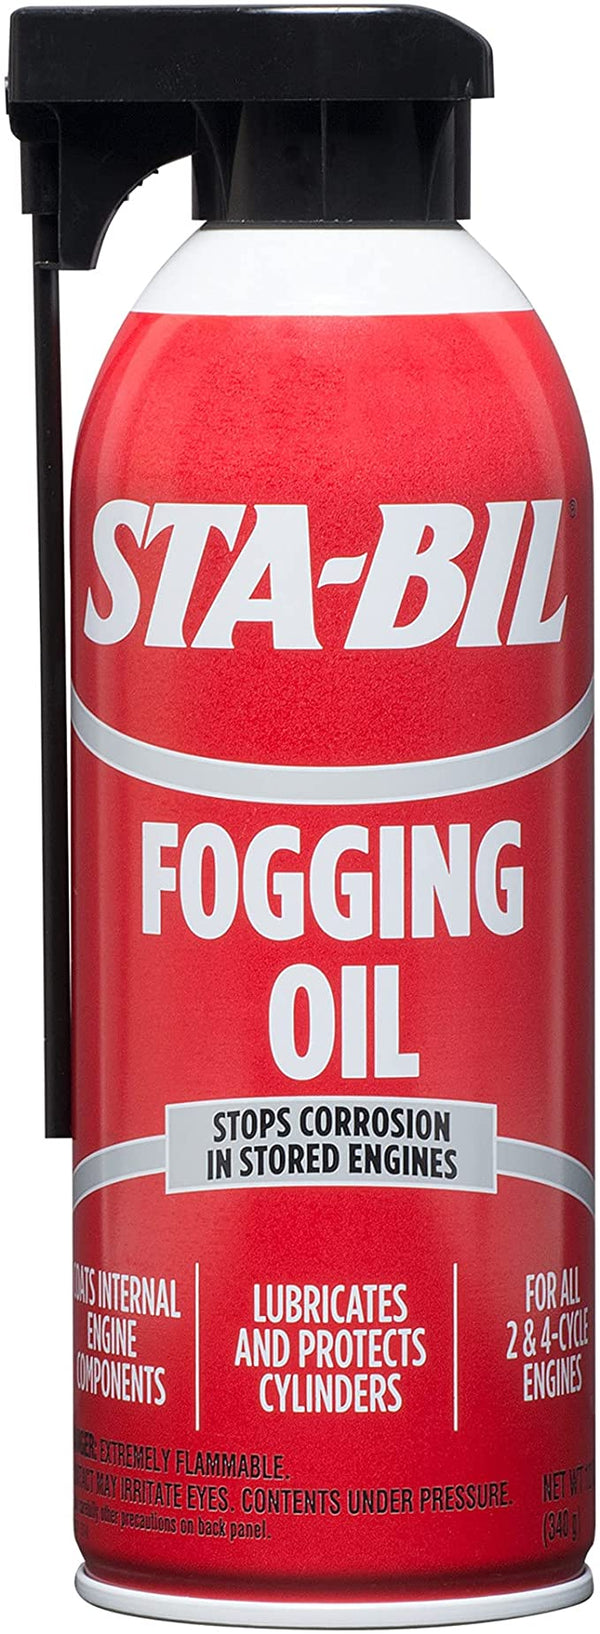 STA-BIL Fogging Oil | G22001